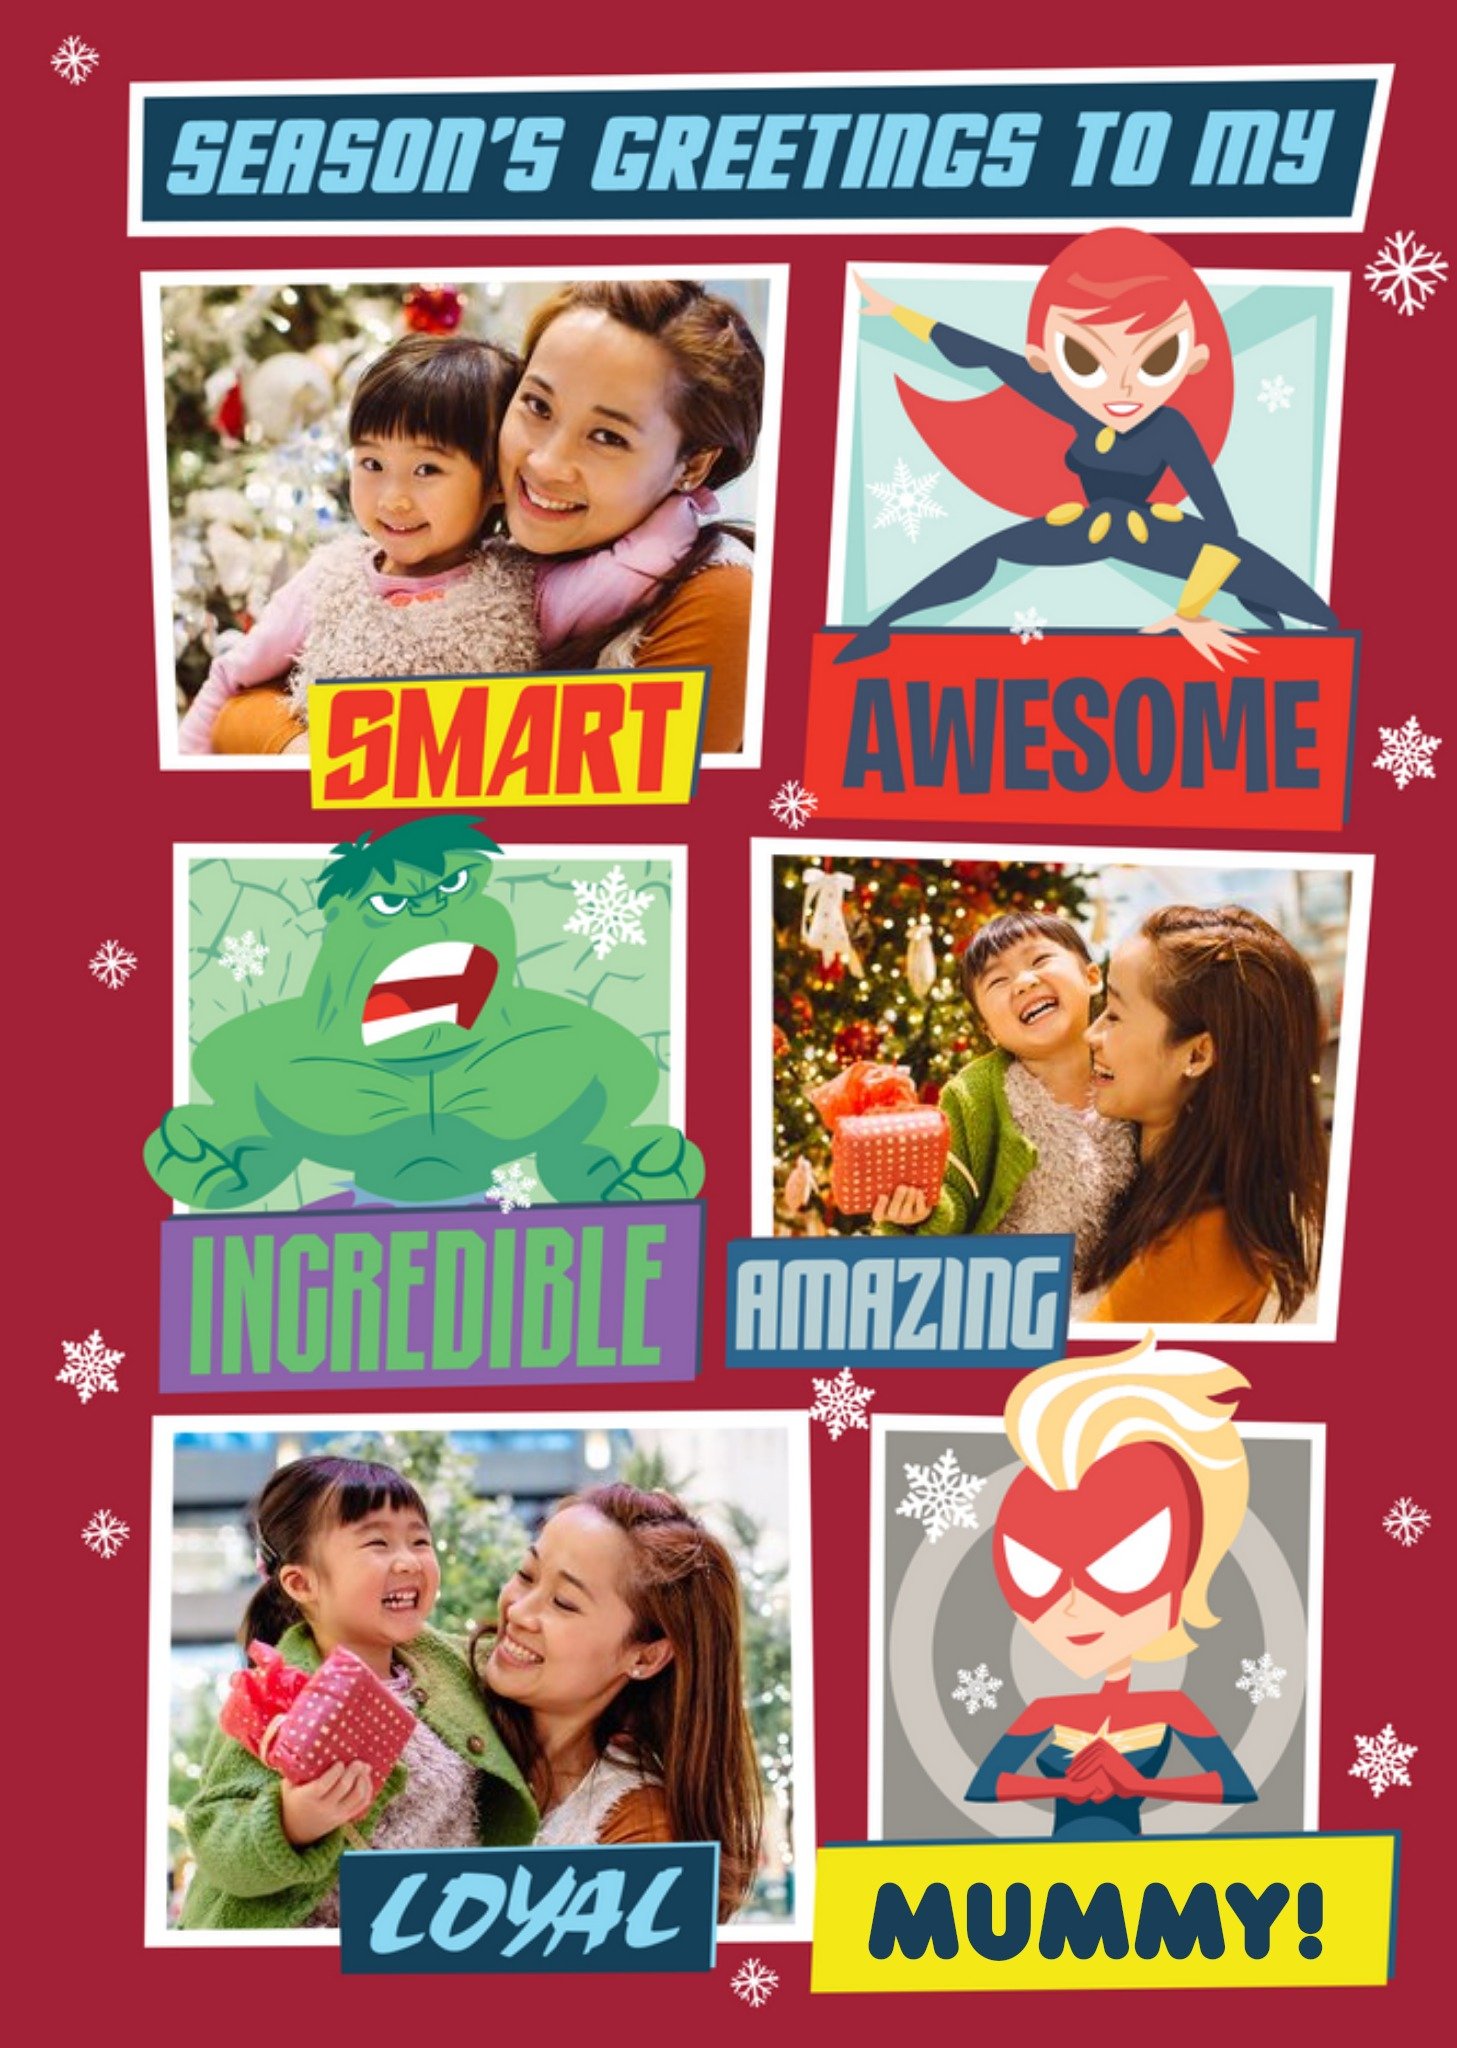 Marvel Comics Avengers Mummy Photo Upload Christmas Card, Large